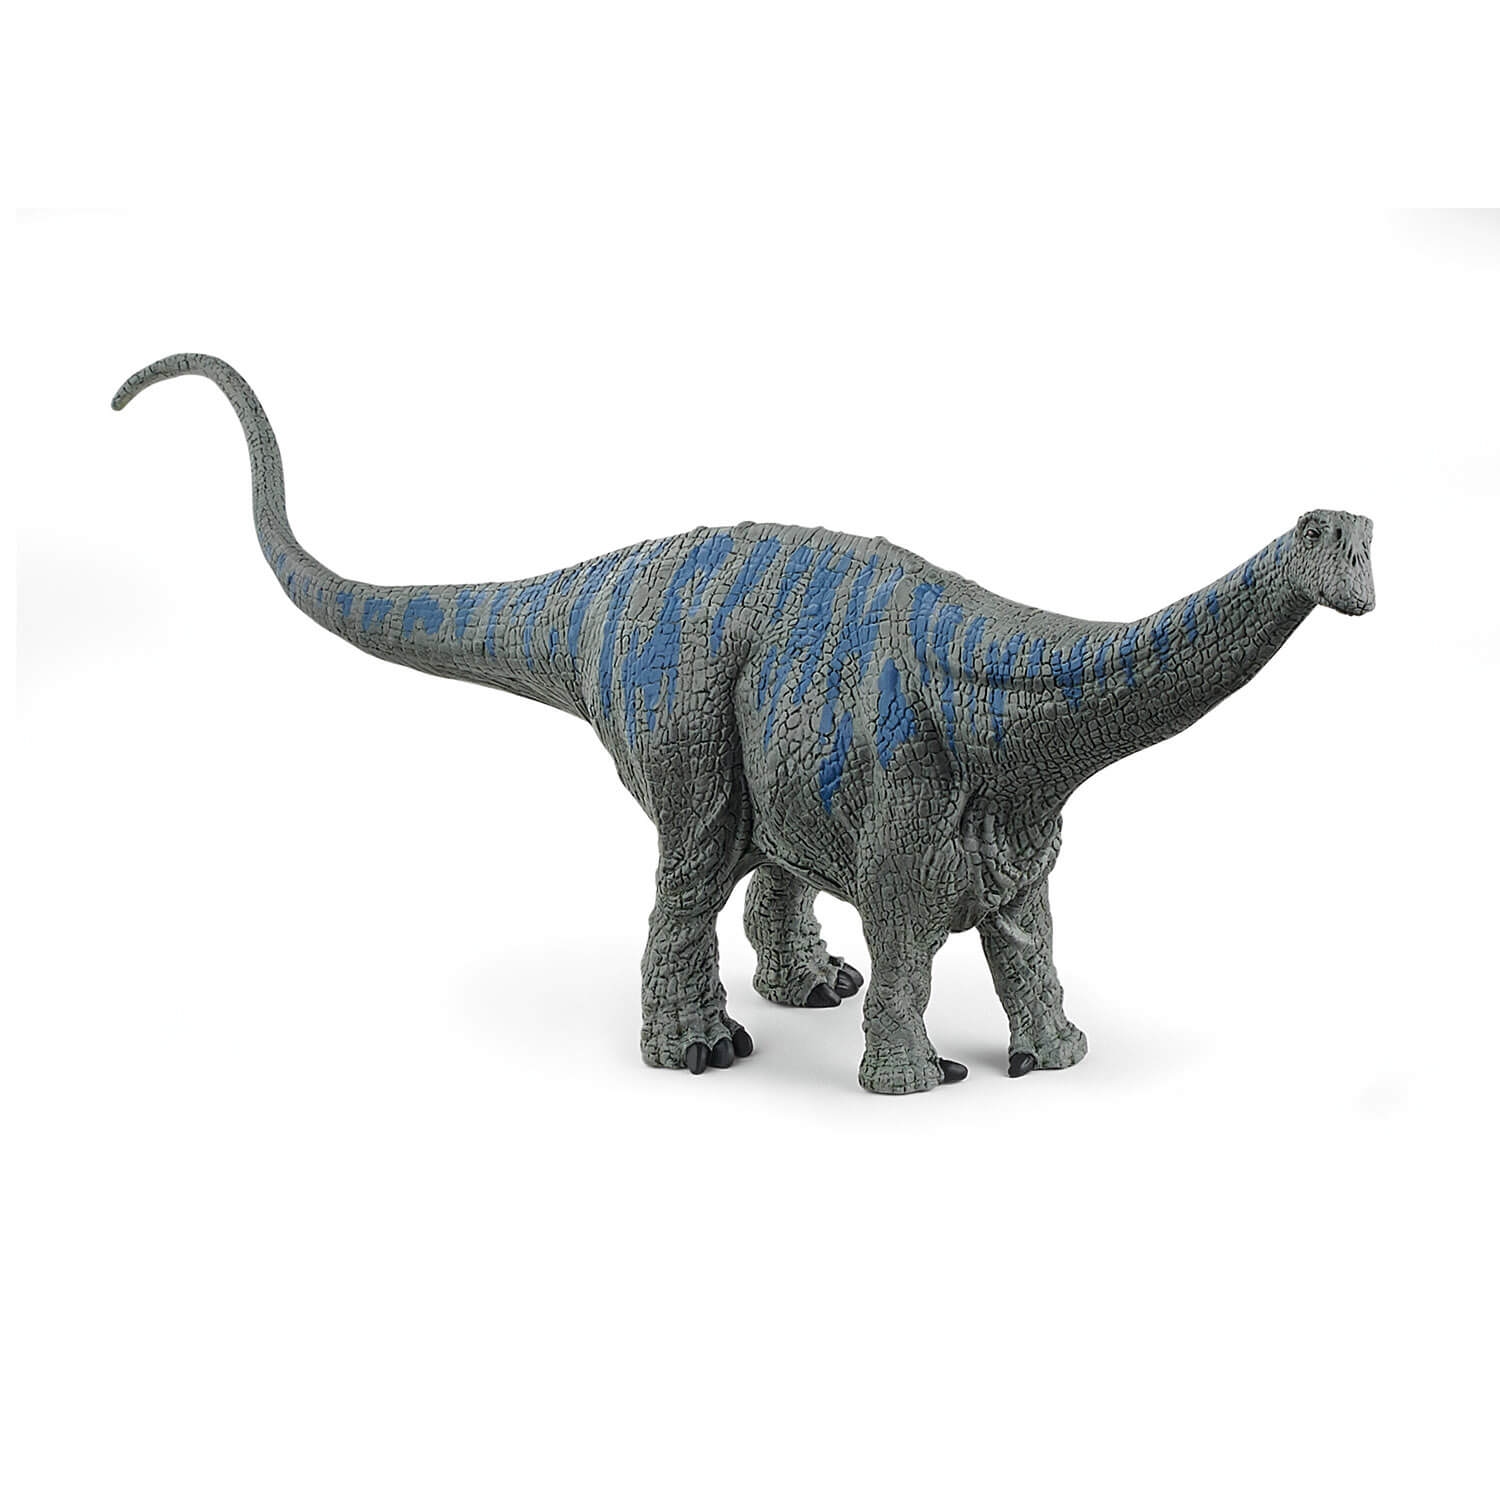 Schleich Dinosaurs Brontosaurus Figure (15027)